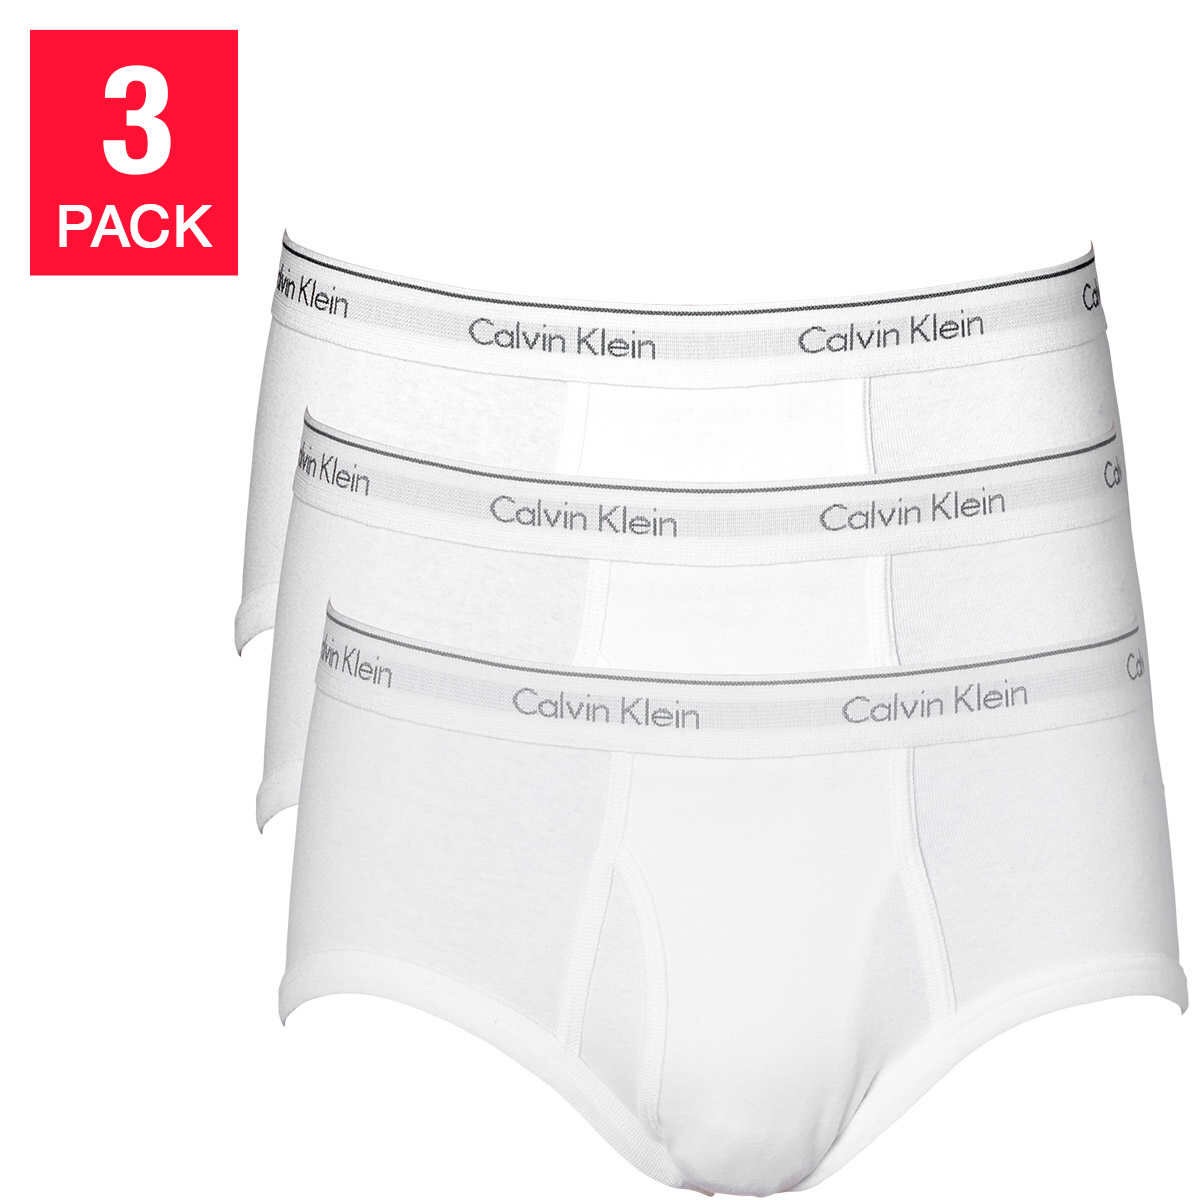 9.97 3条CK内裤包邮送回家 
数量有限 欲购从速
Calvin Klein Men's 3-pack Brief